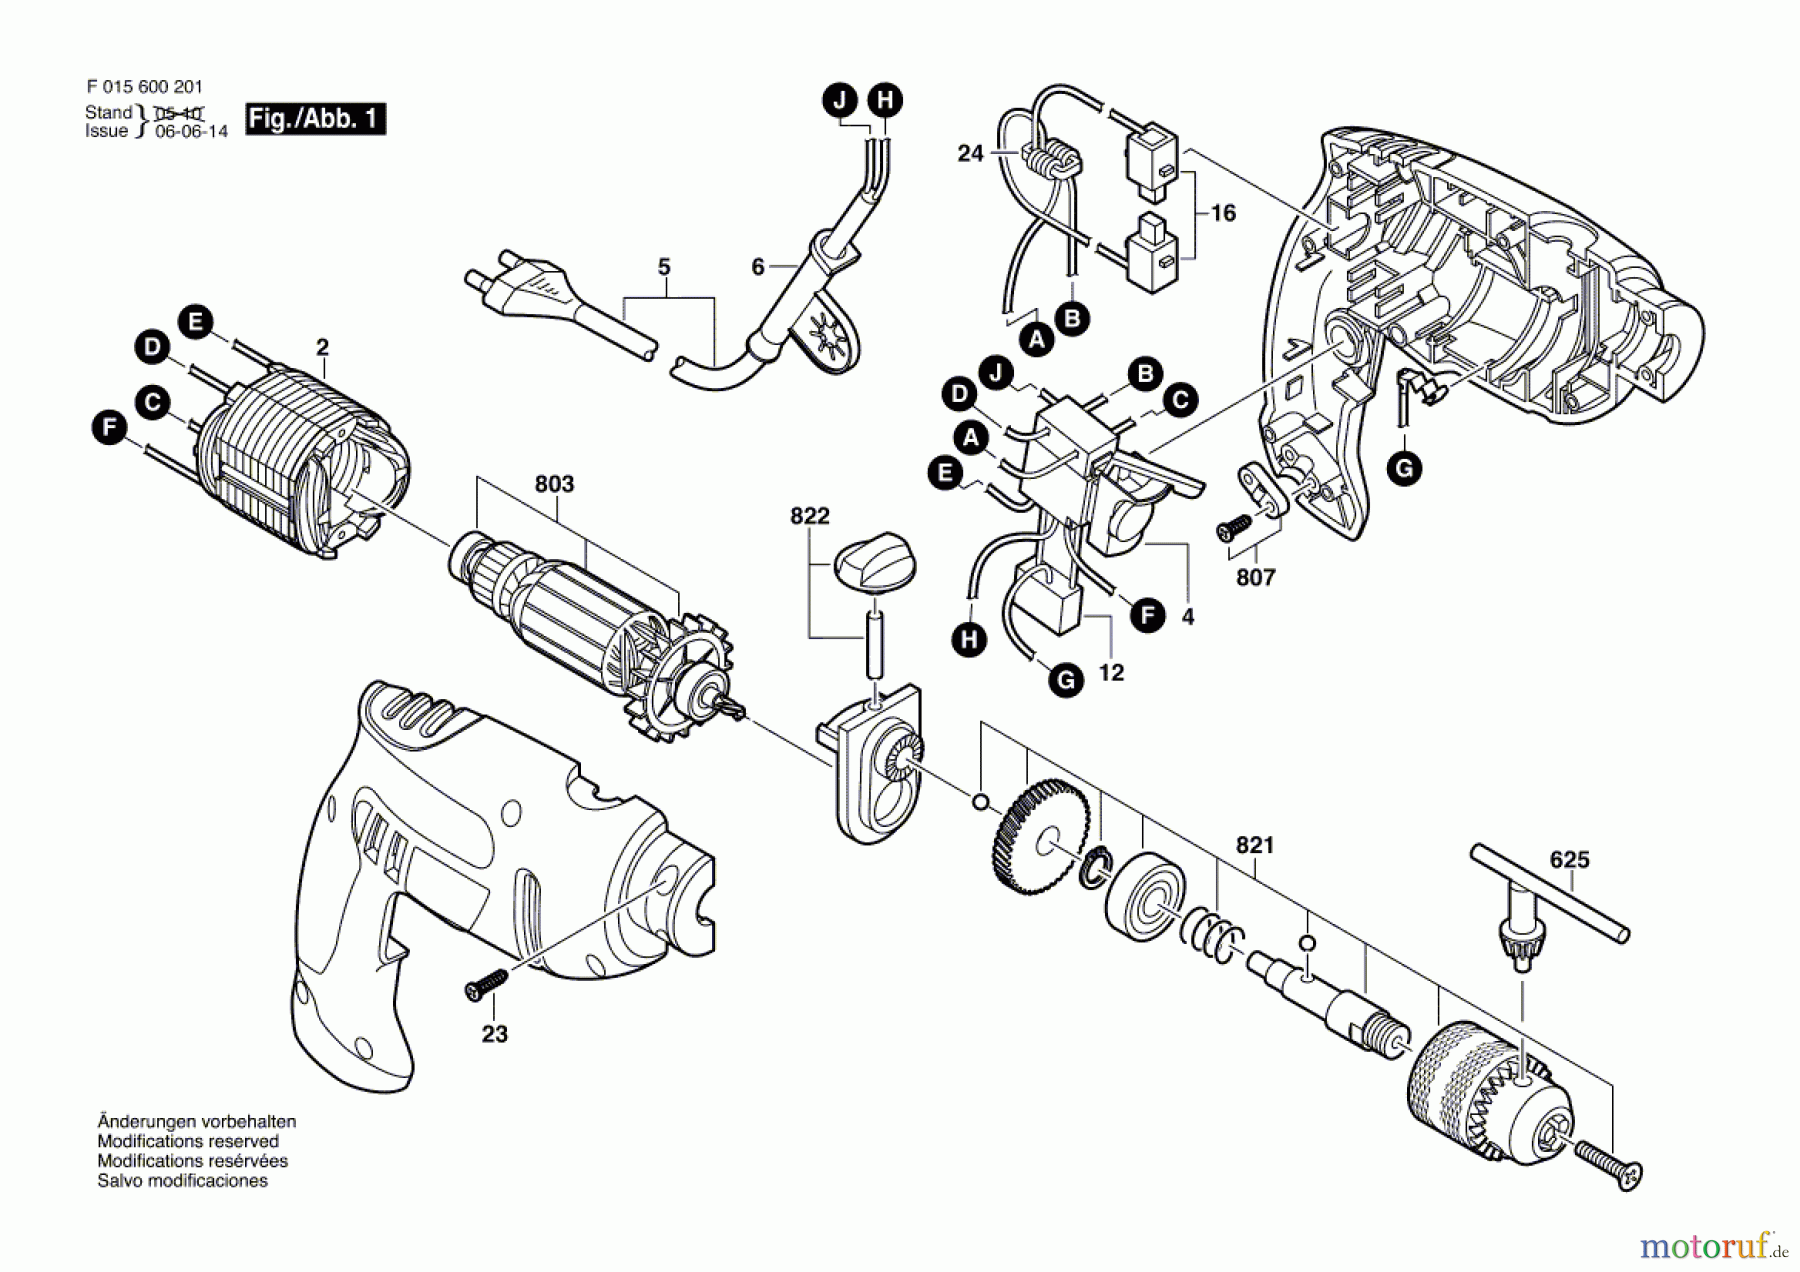  Bosch Werkzeug Schlagbohrmaschine 6270 Seite 1